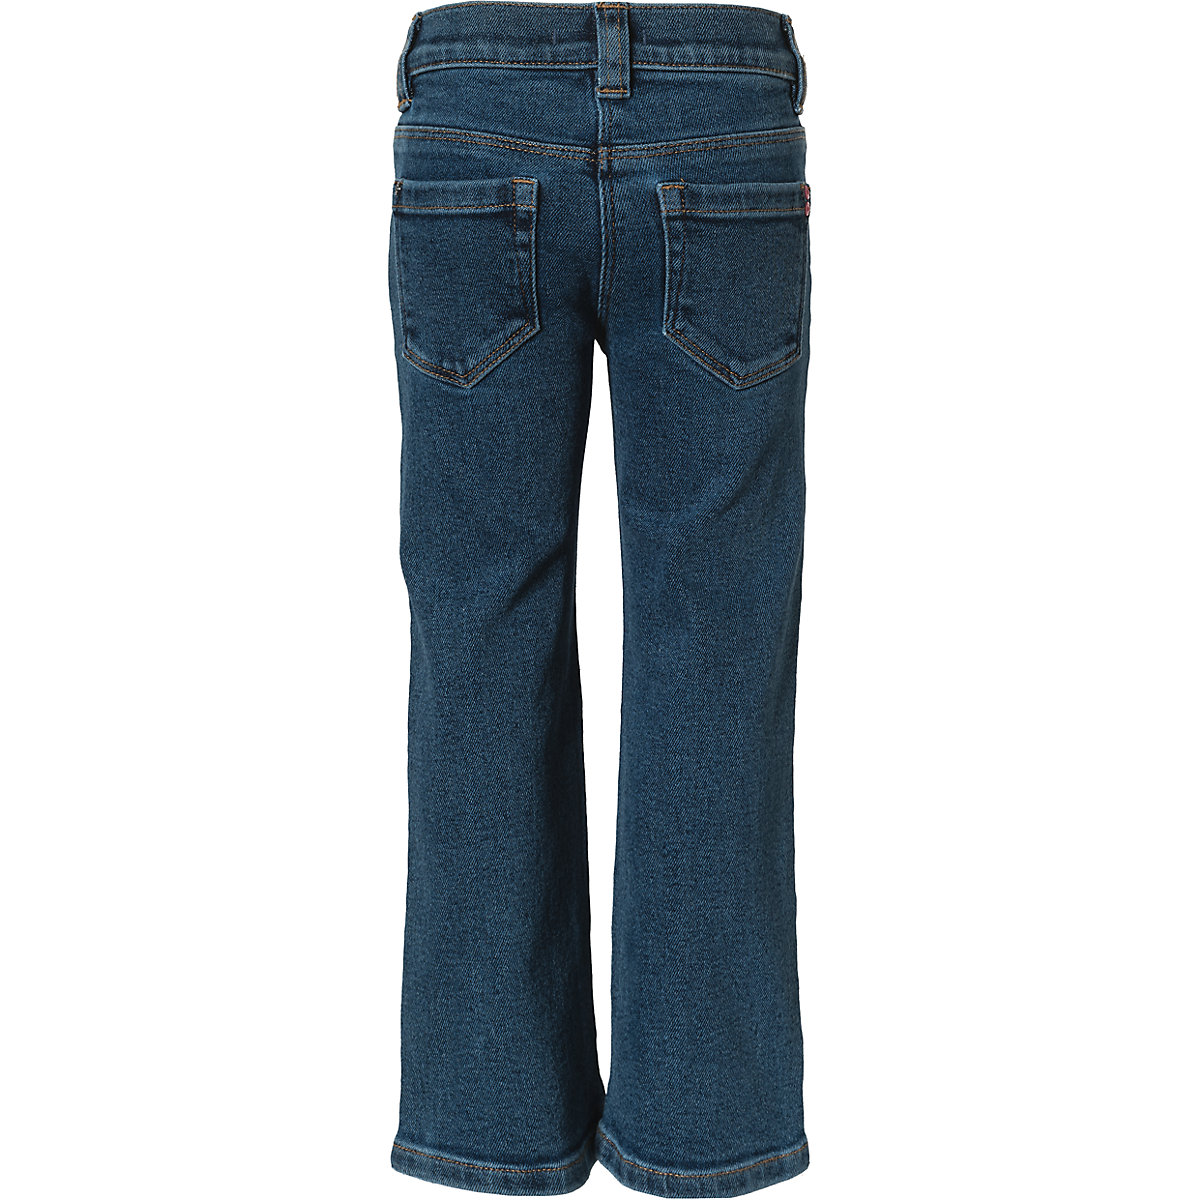 s.Oliver Jeans Flare Leg für Mädchen Passform Regular dunkelblau OR9337